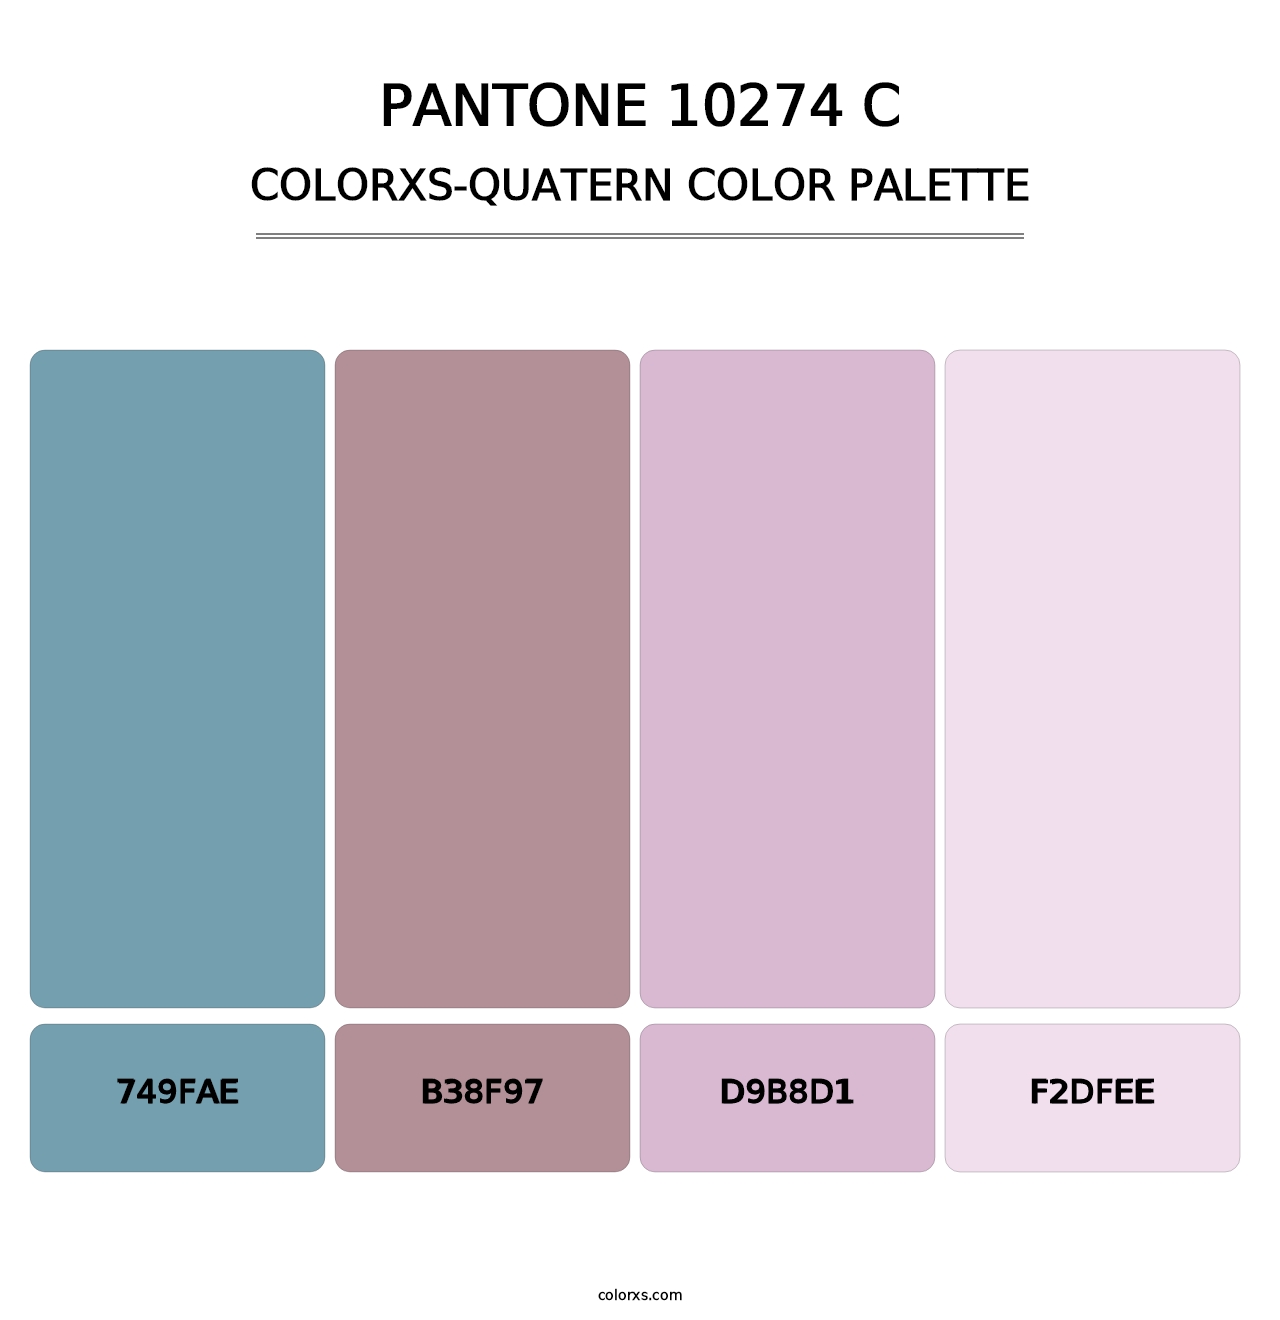 PANTONE 10274 C - Colorxs Quatern Palette